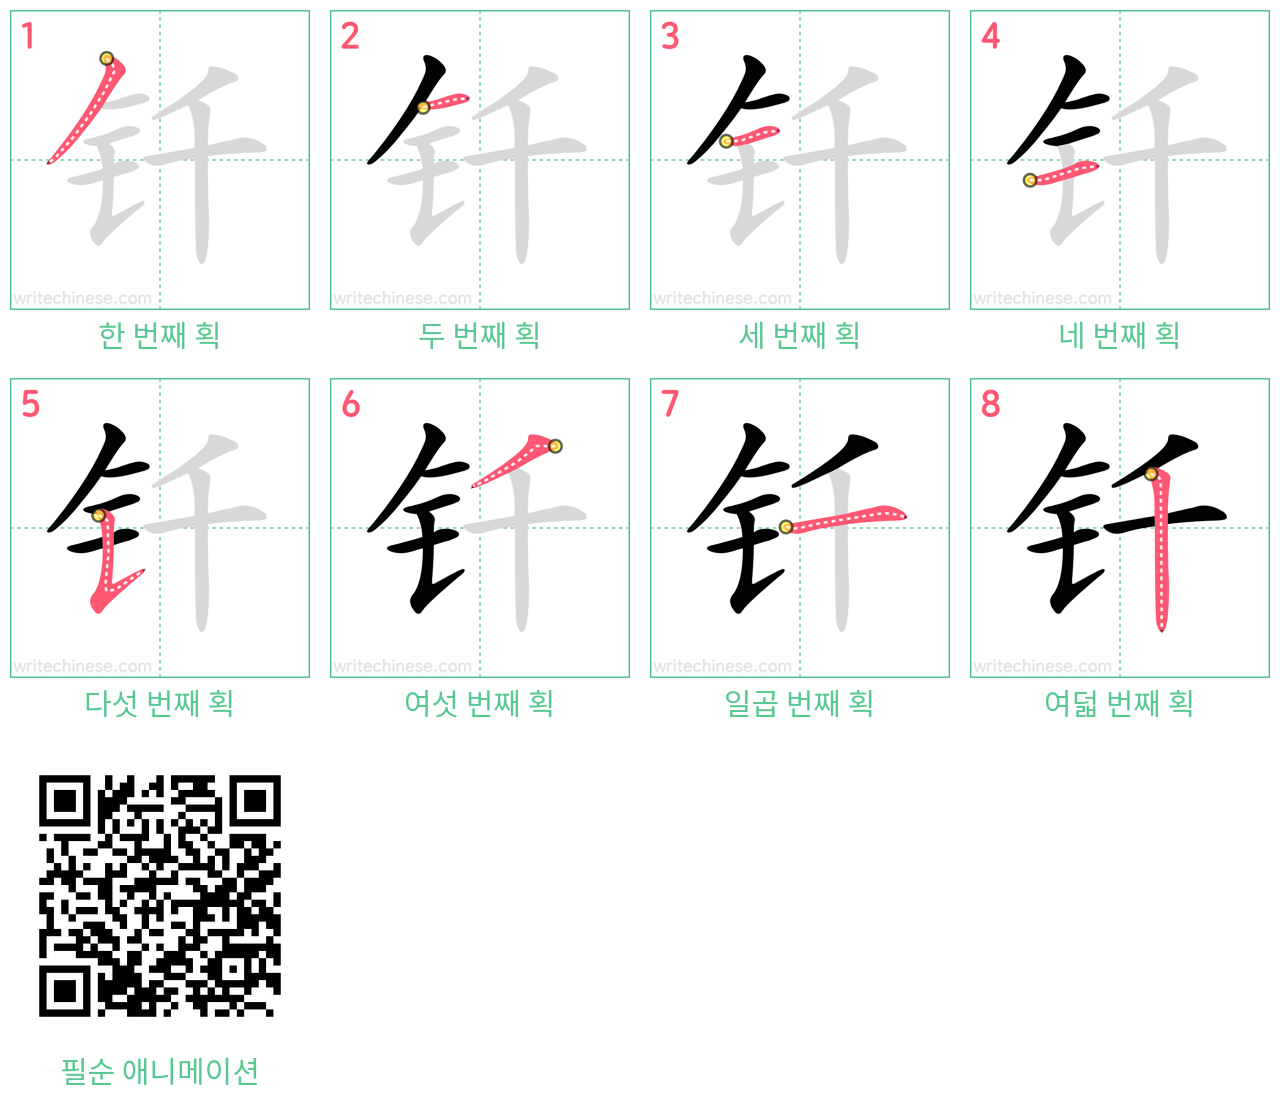 钎 step-by-step stroke order diagrams